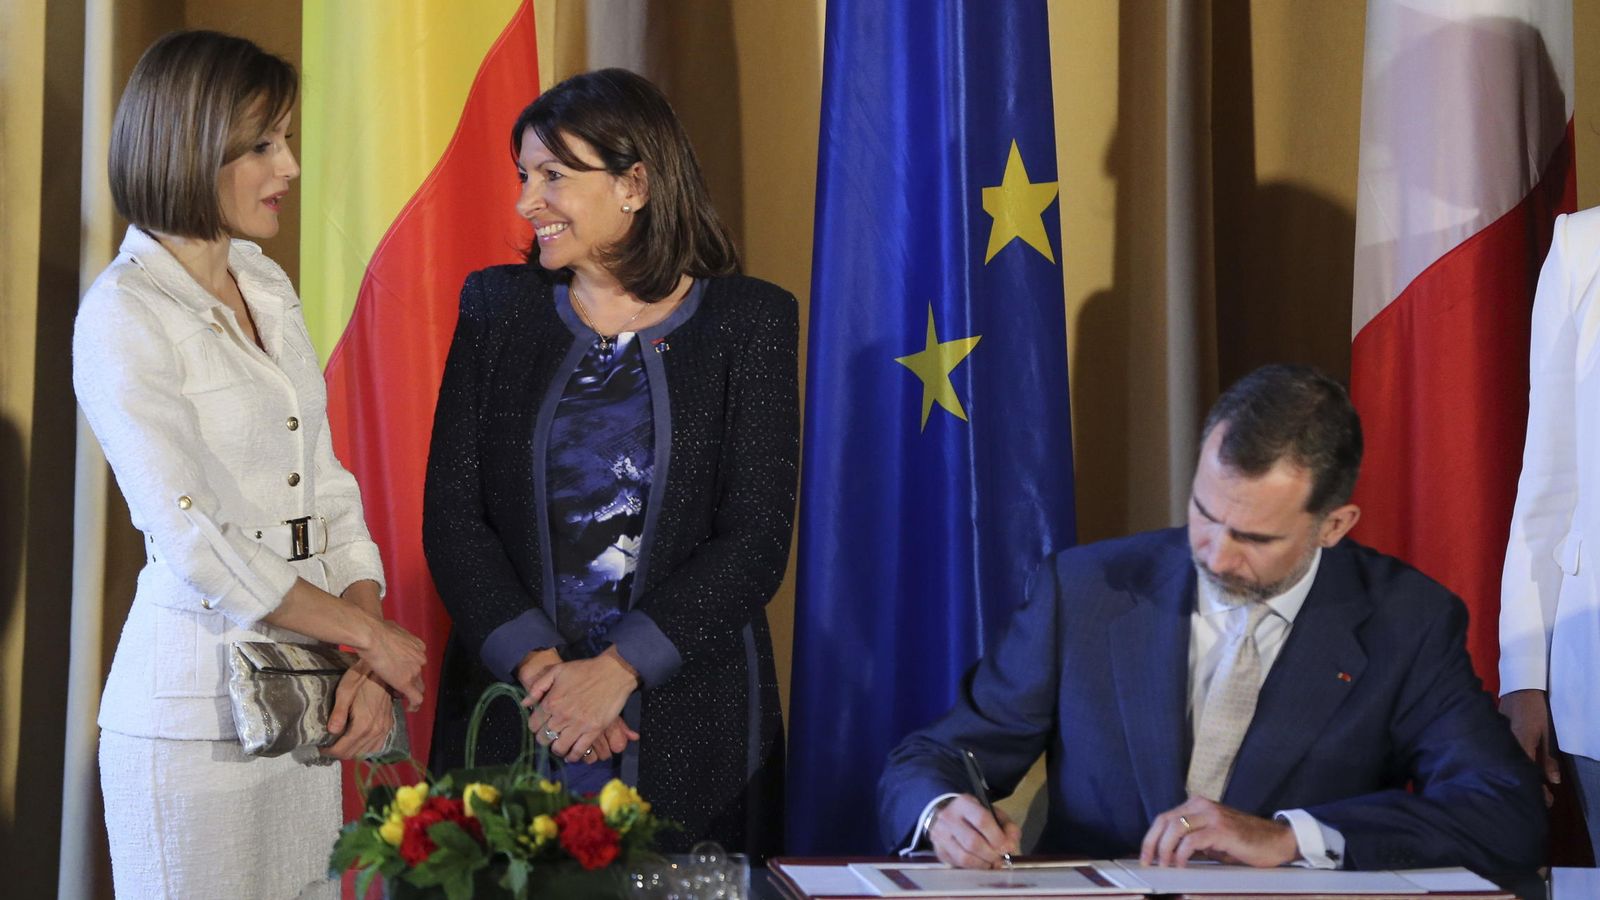 Foto: El rey Felipe VI firma el libro de honor en presencia de la reina Letizia y la alcaldesa de París, Anne Hidalgo (c). (EFE)